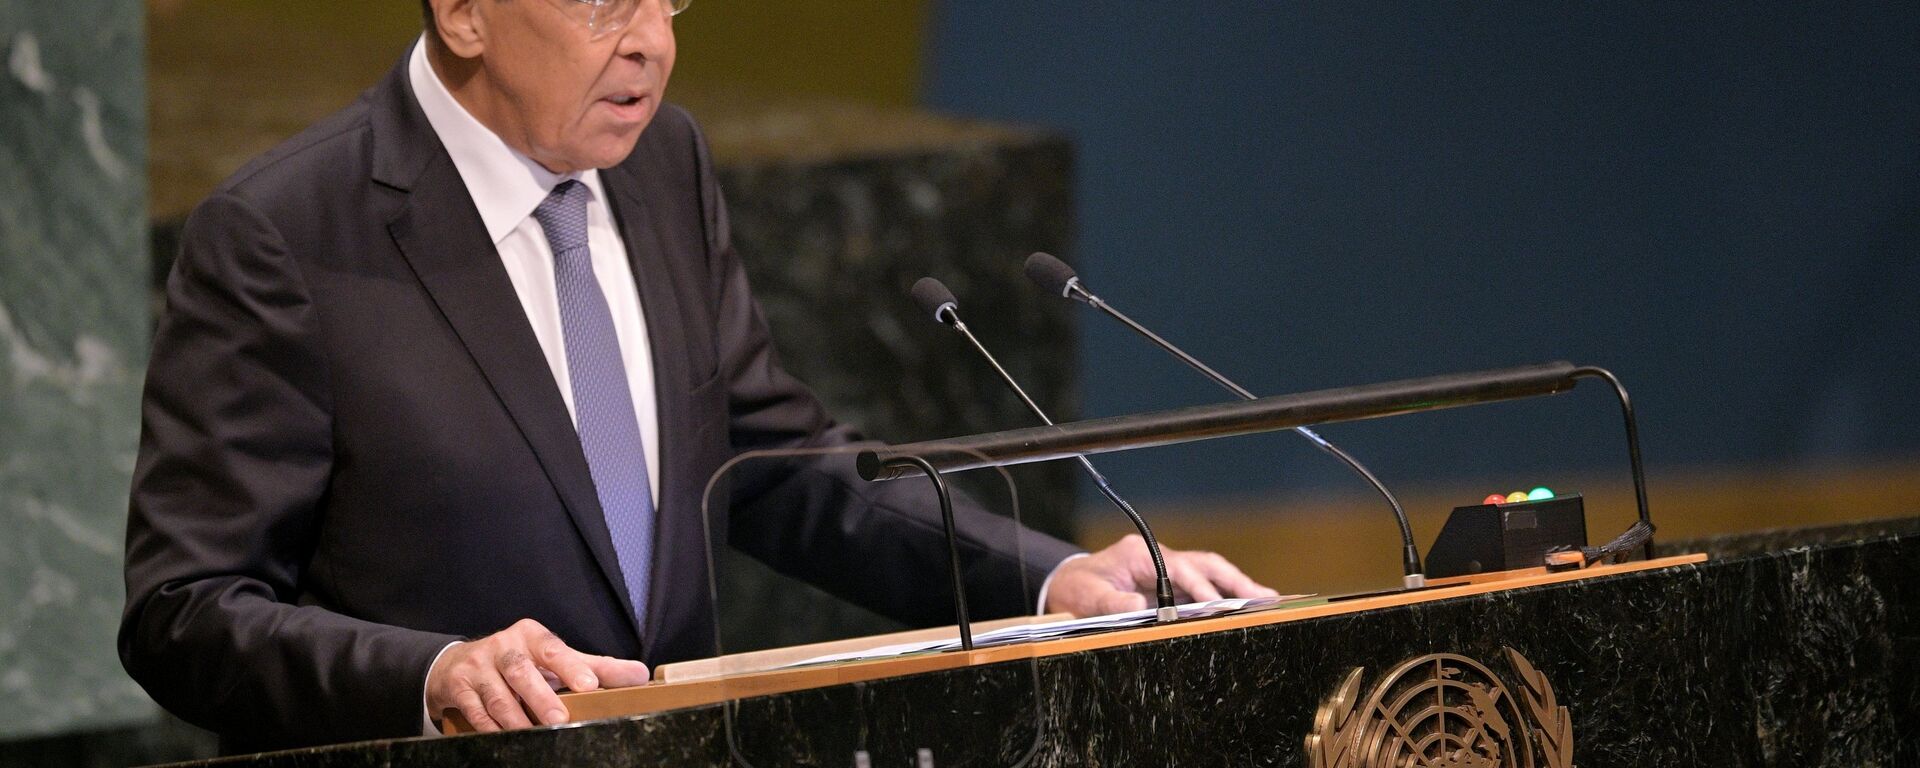 Krievijas ārlietu ministra Sergeja Lavrova uzruna ANO Ģenerālās asamblejas 73. sesijā Ņujorkā - Sputnik Latvija, 1920, 30.09.2018